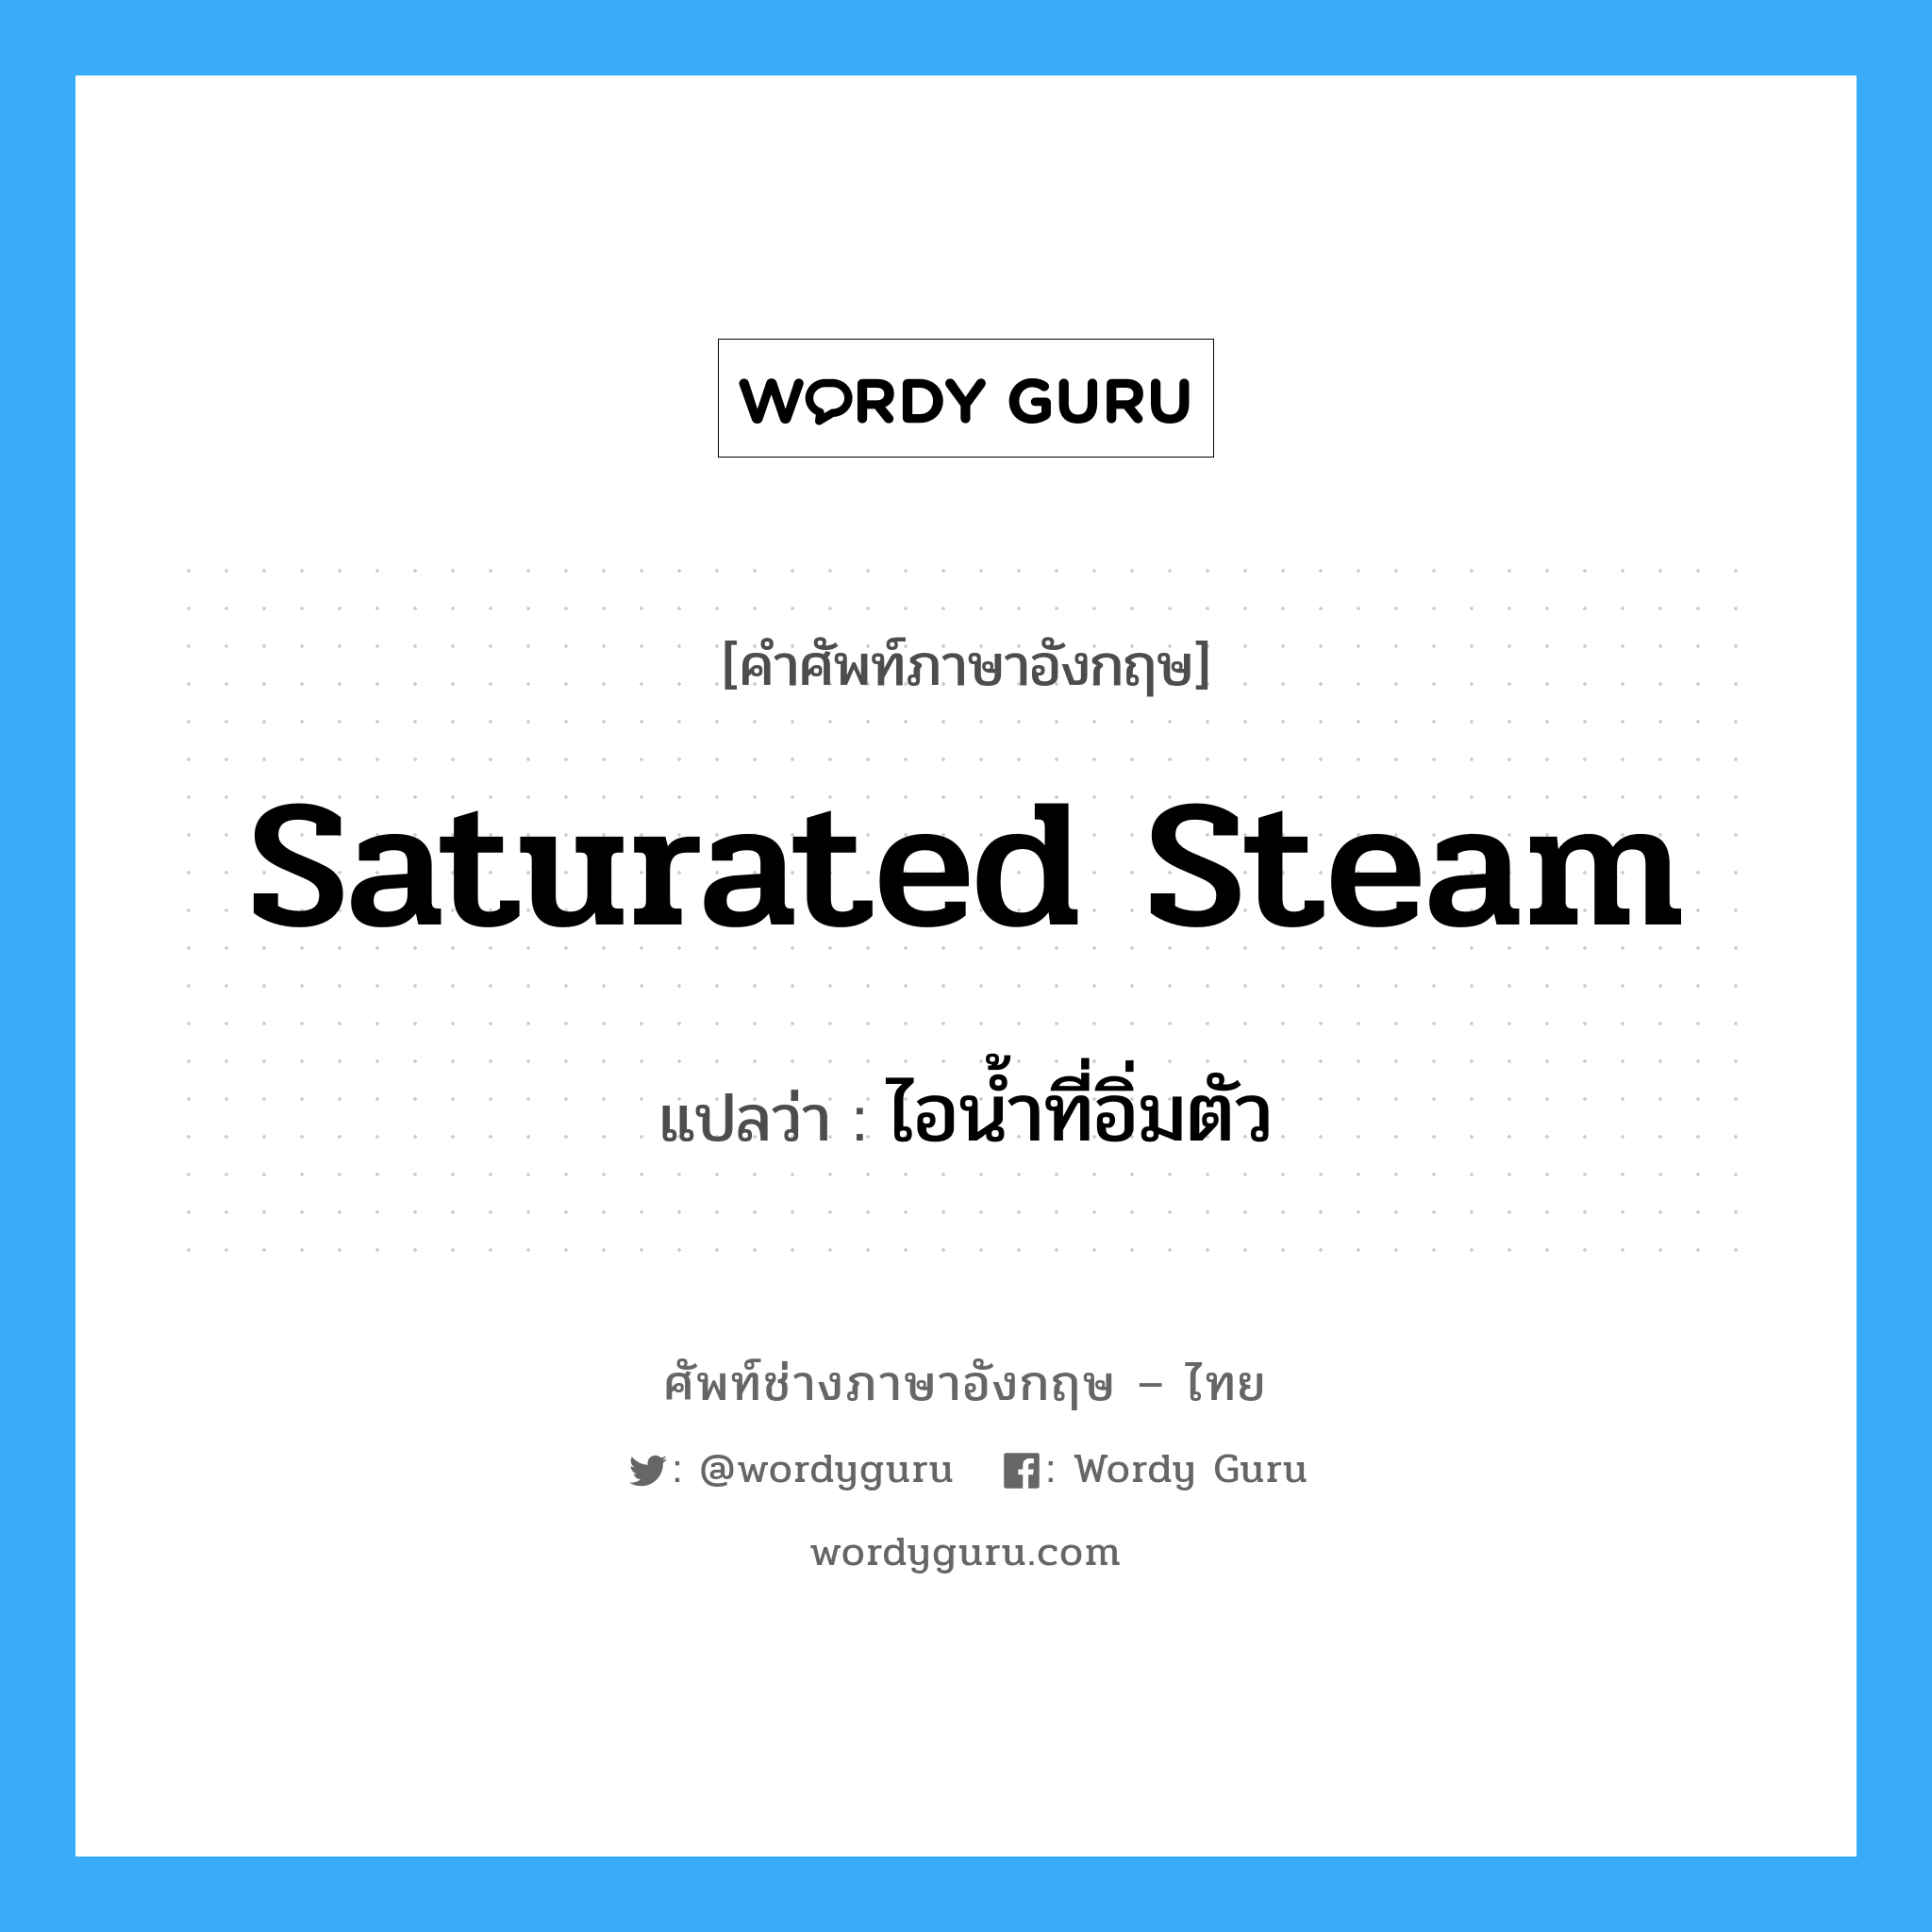 ไอน้ำที่อิ่มตัว ภาษาอังกฤษ?, คำศัพท์ช่างภาษาอังกฤษ - ไทย ไอน้ำที่อิ่มตัว คำศัพท์ภาษาอังกฤษ ไอน้ำที่อิ่มตัว แปลว่า saturated steam